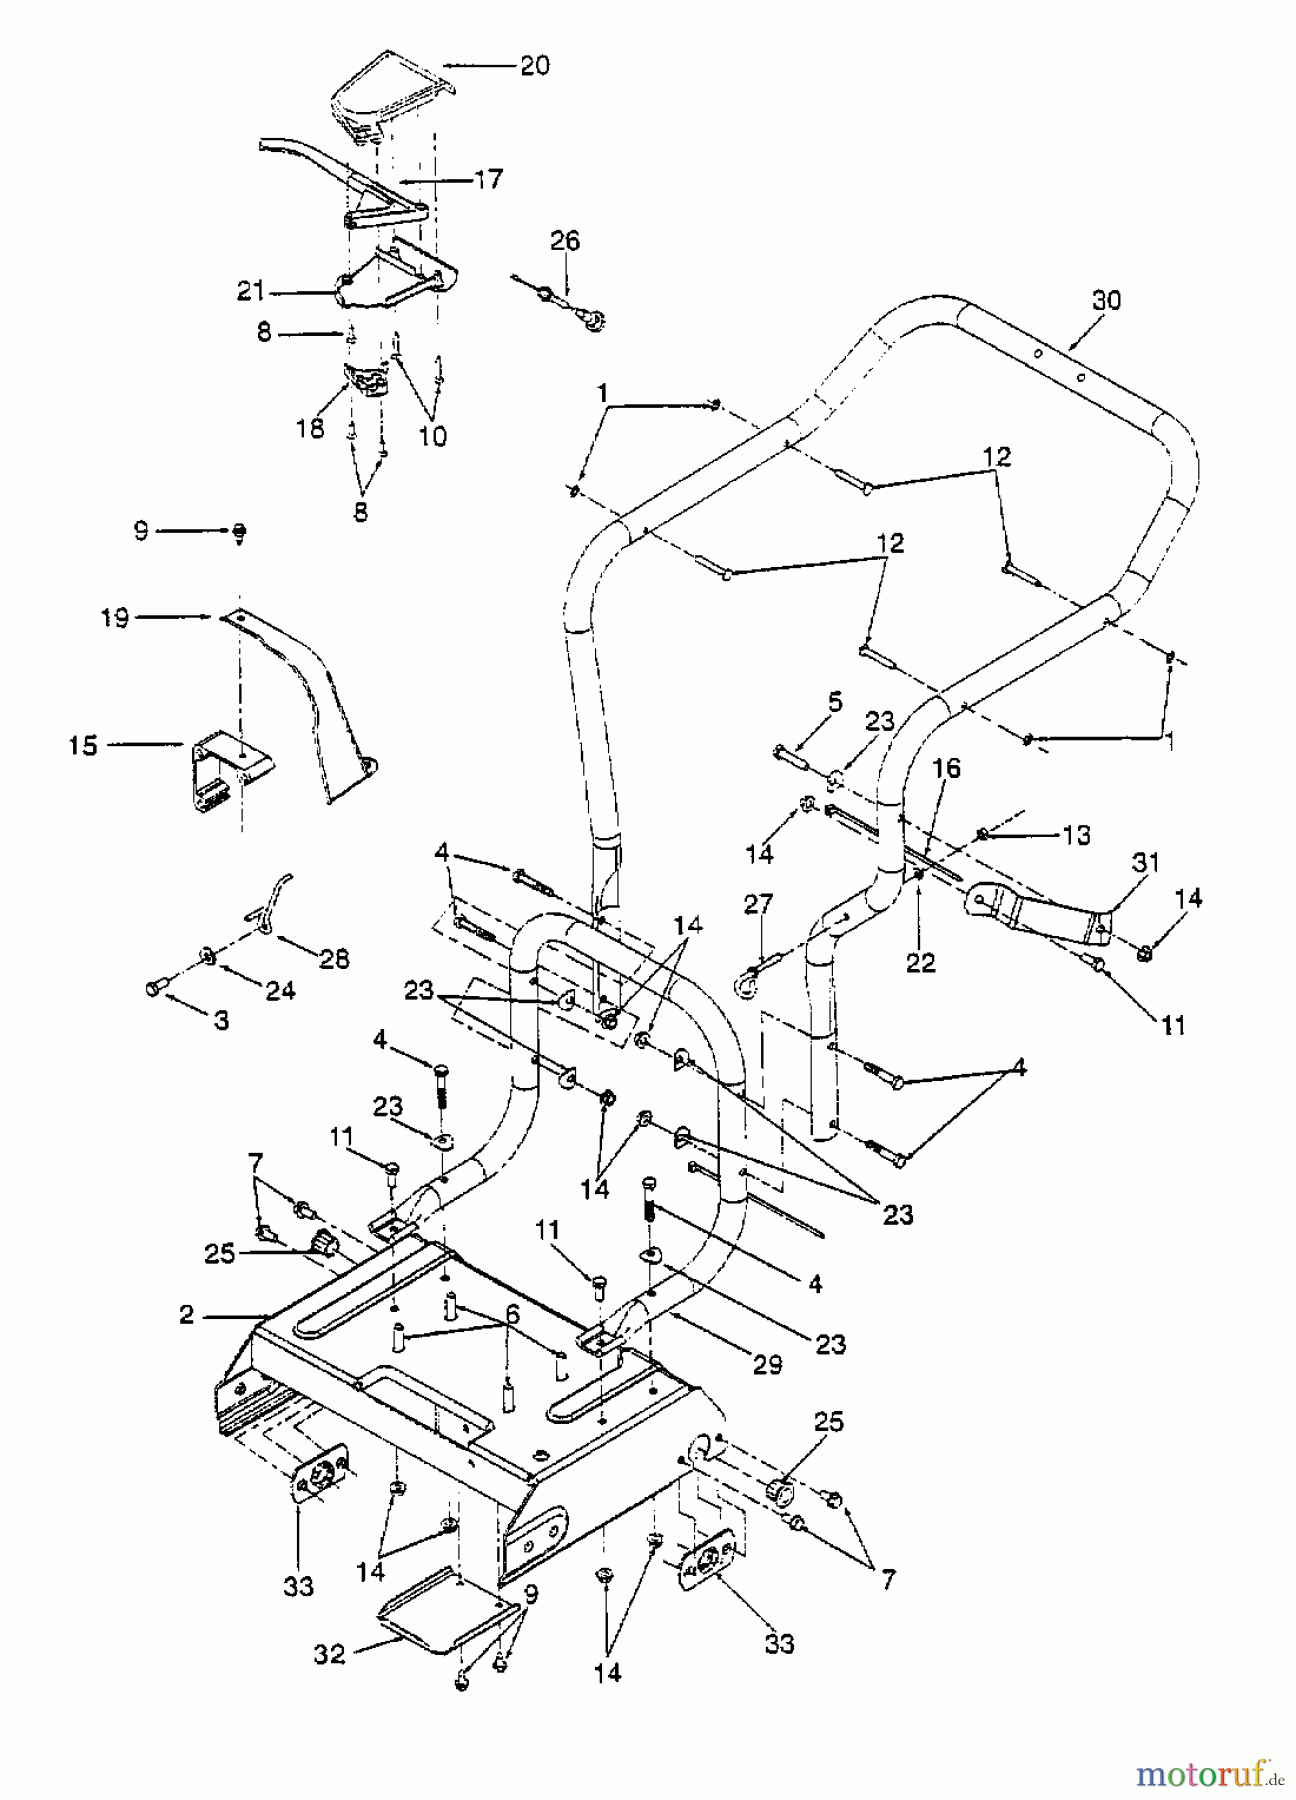  Gutbrod Leaf blower, Blower vac 203 B 24A-203B604  (1999) Handle